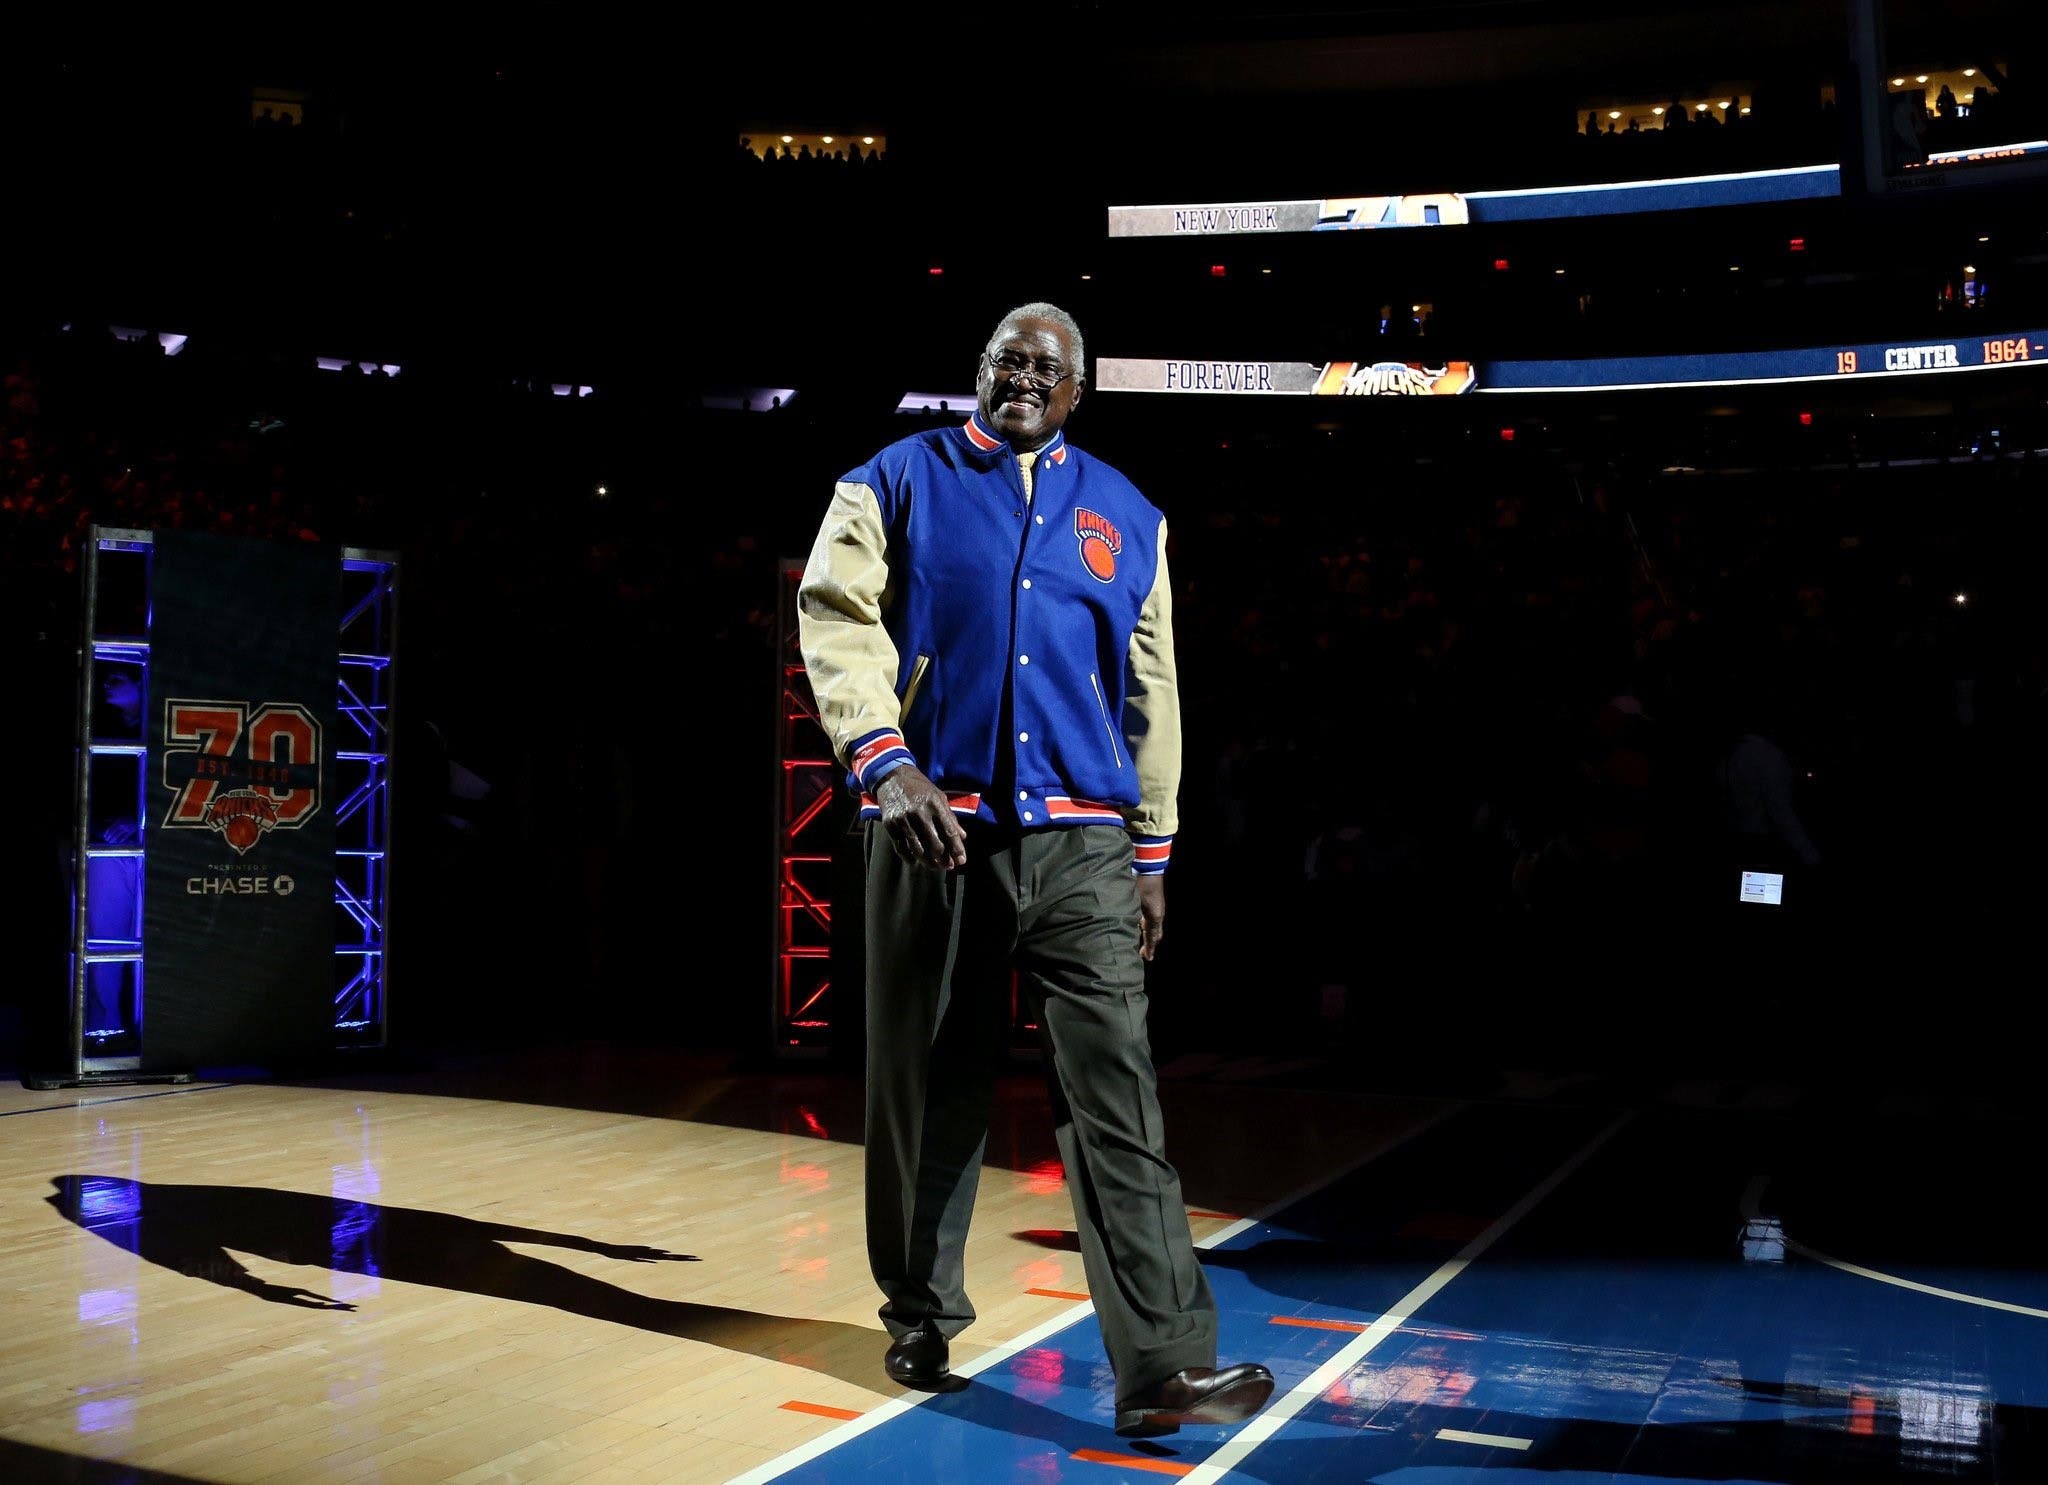 Fallece Willis Reed, doble campeón de la NBA con los Knicks